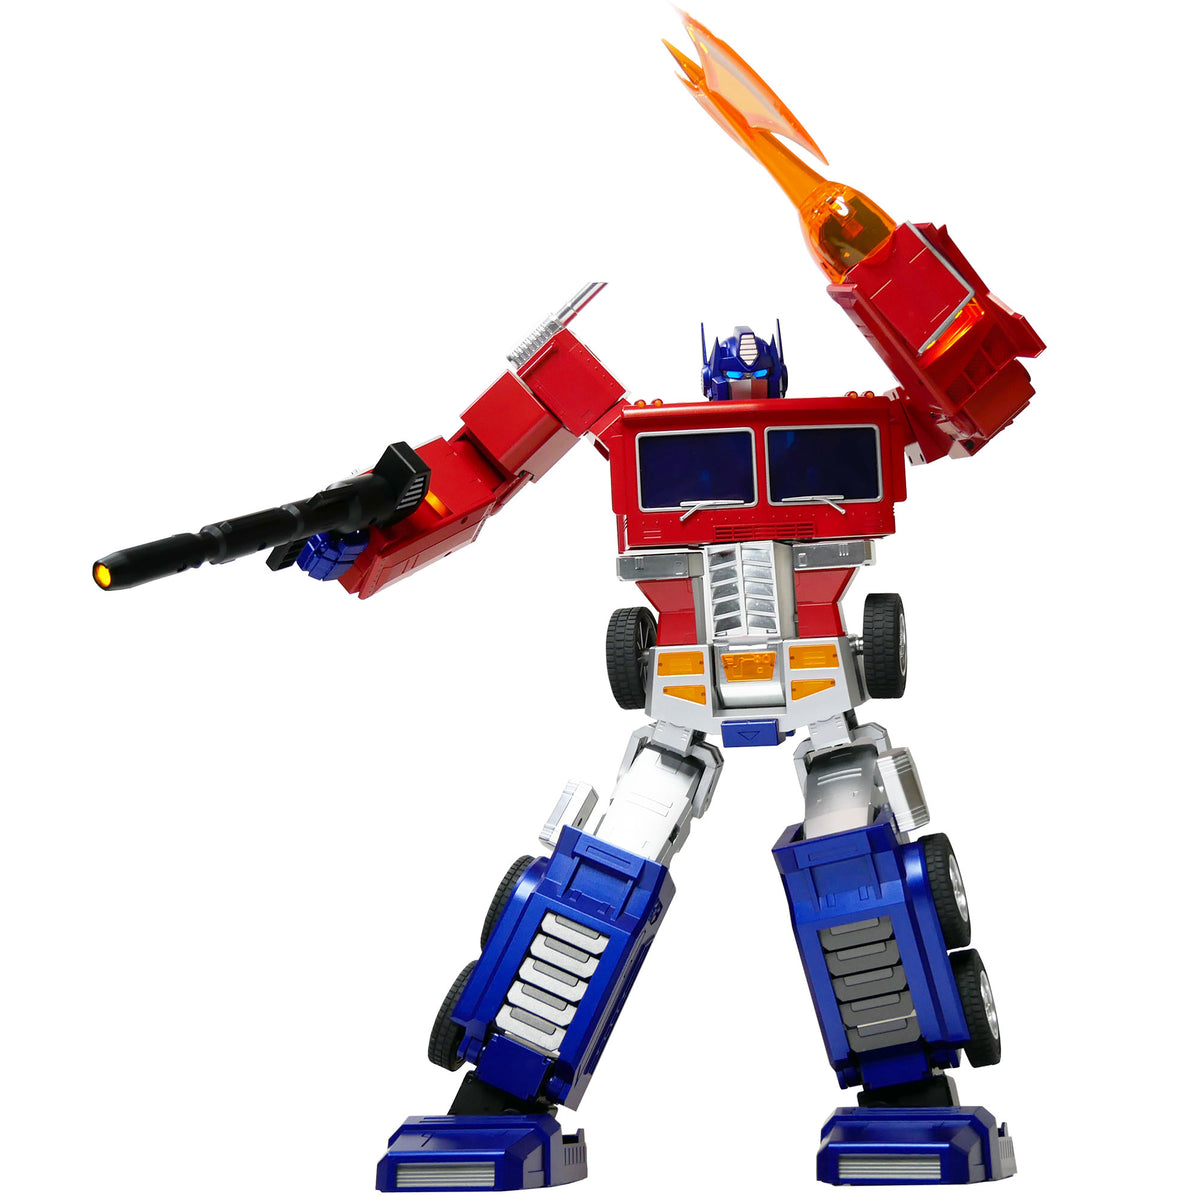 Transformers Optimus Prime Auto-Converting Robot Robosen – Hasbro Pulse